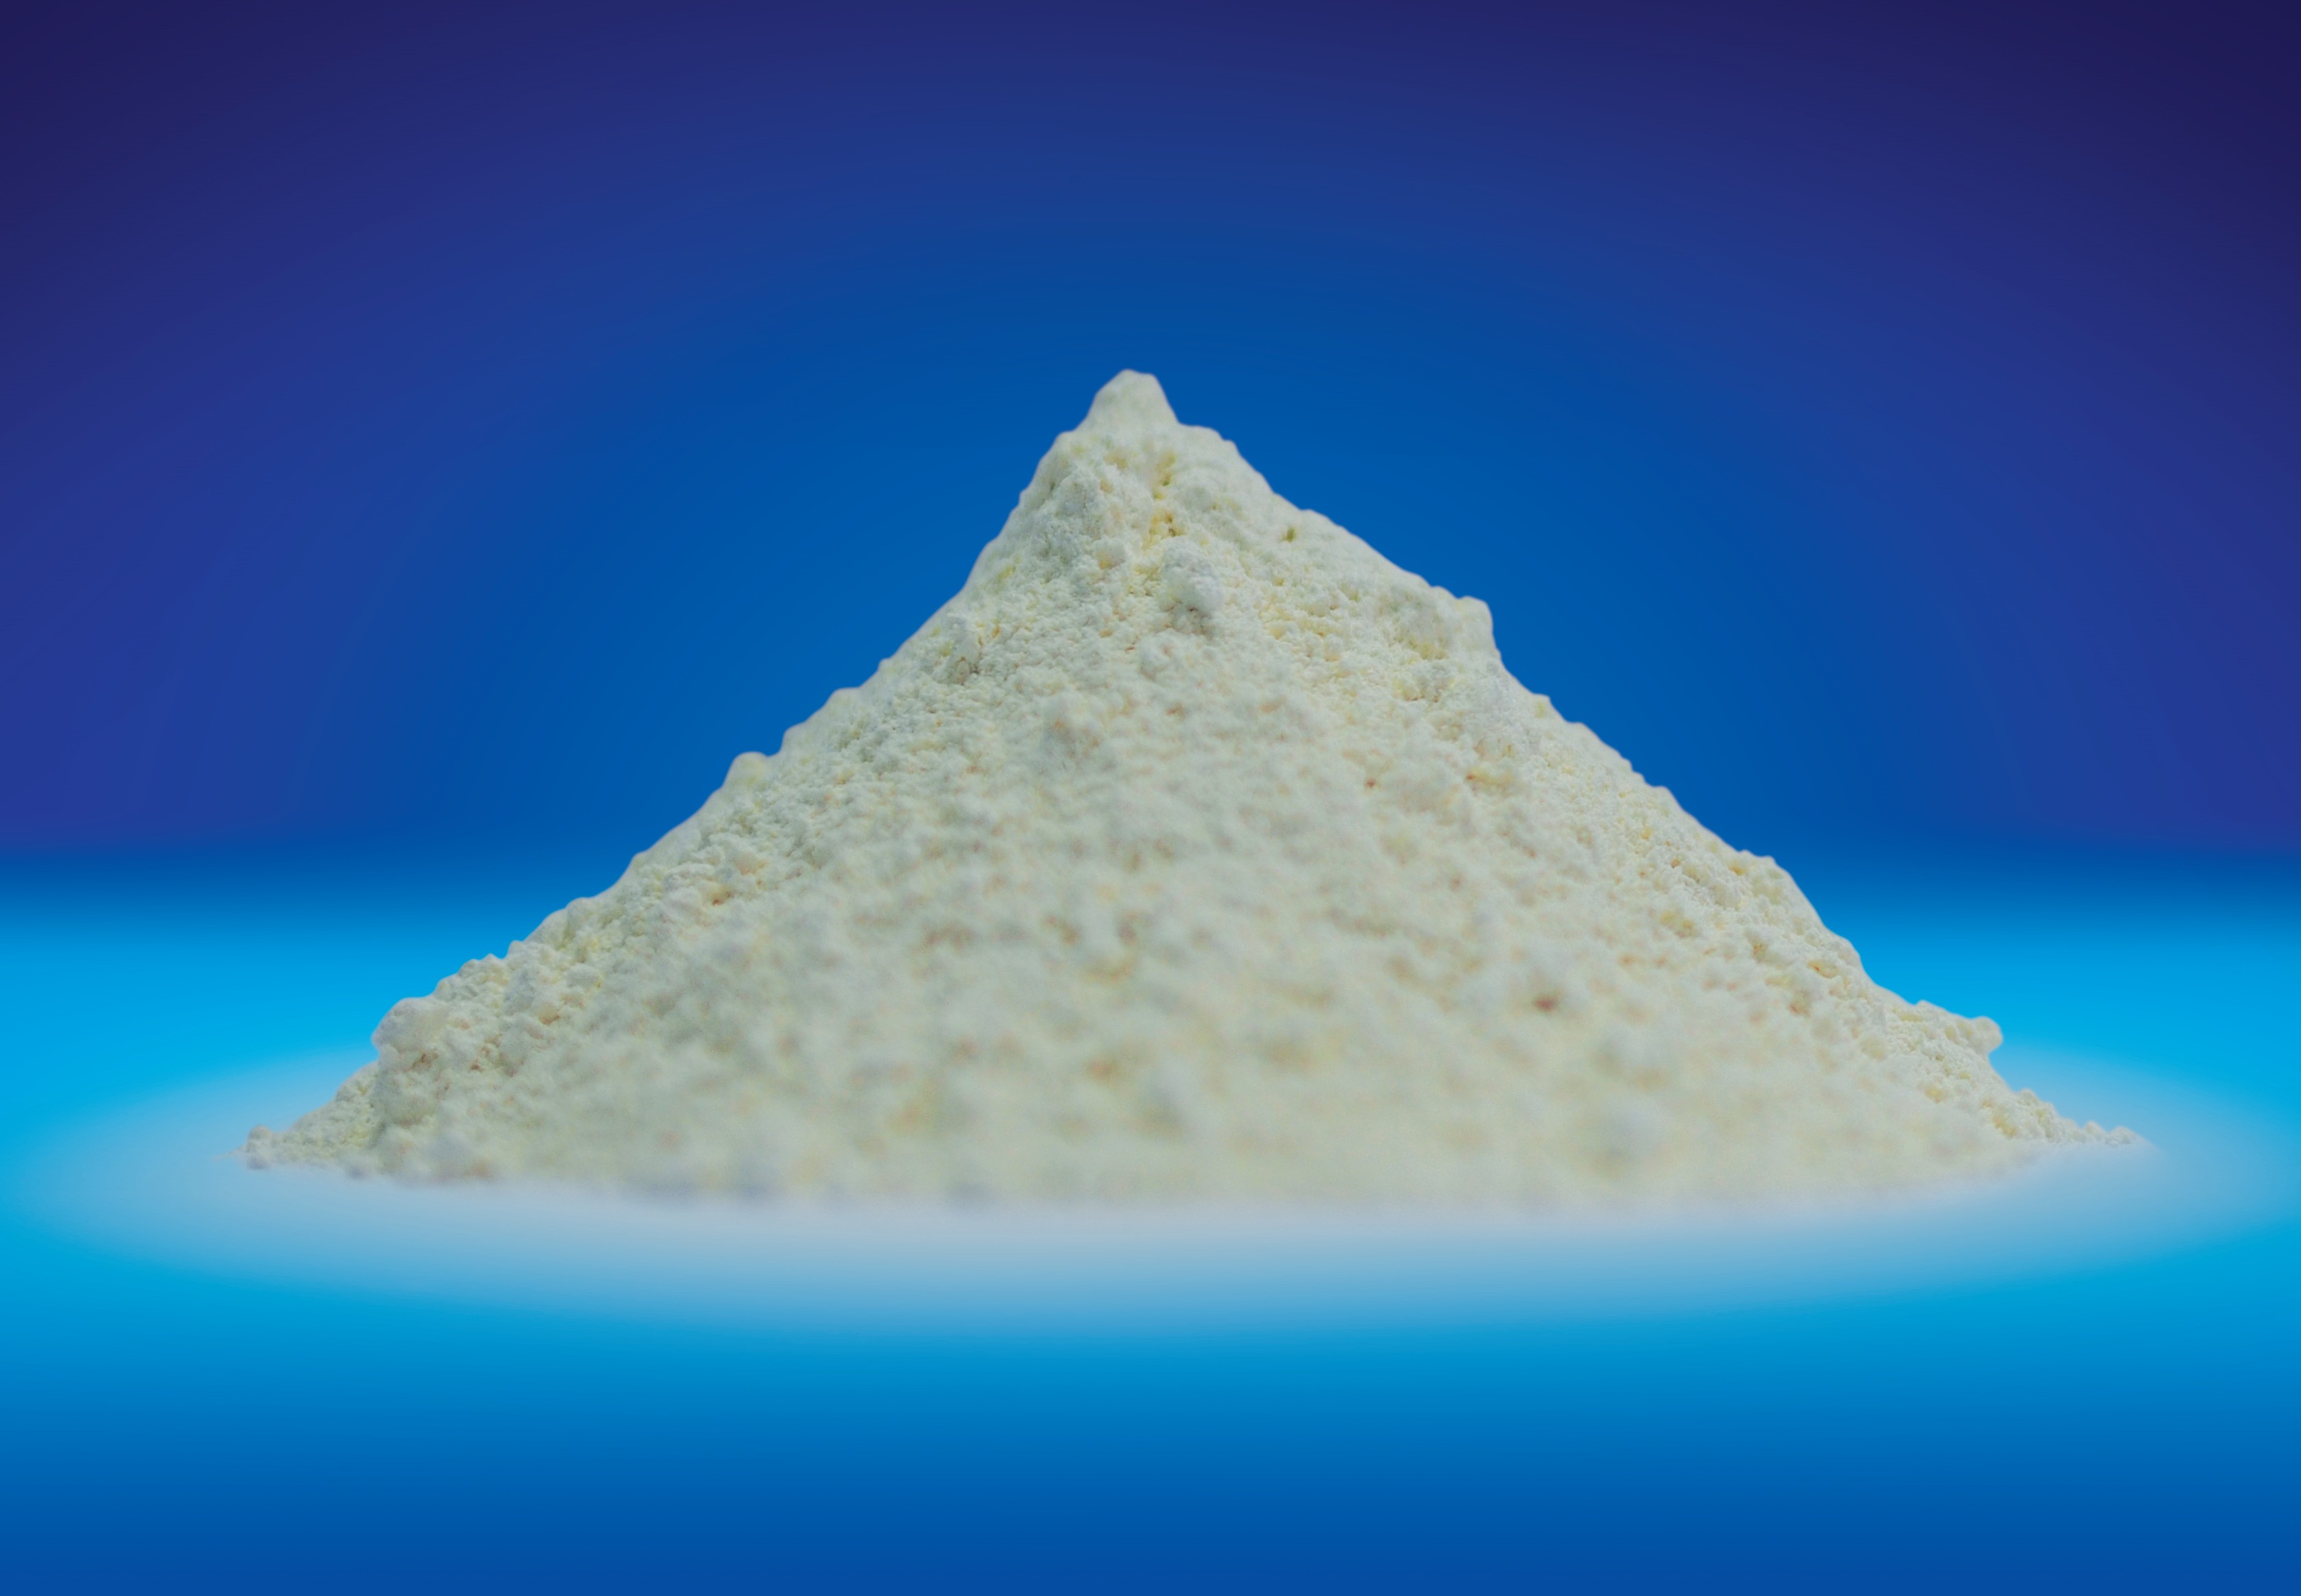 Zinc oxide white powder animal feed additive